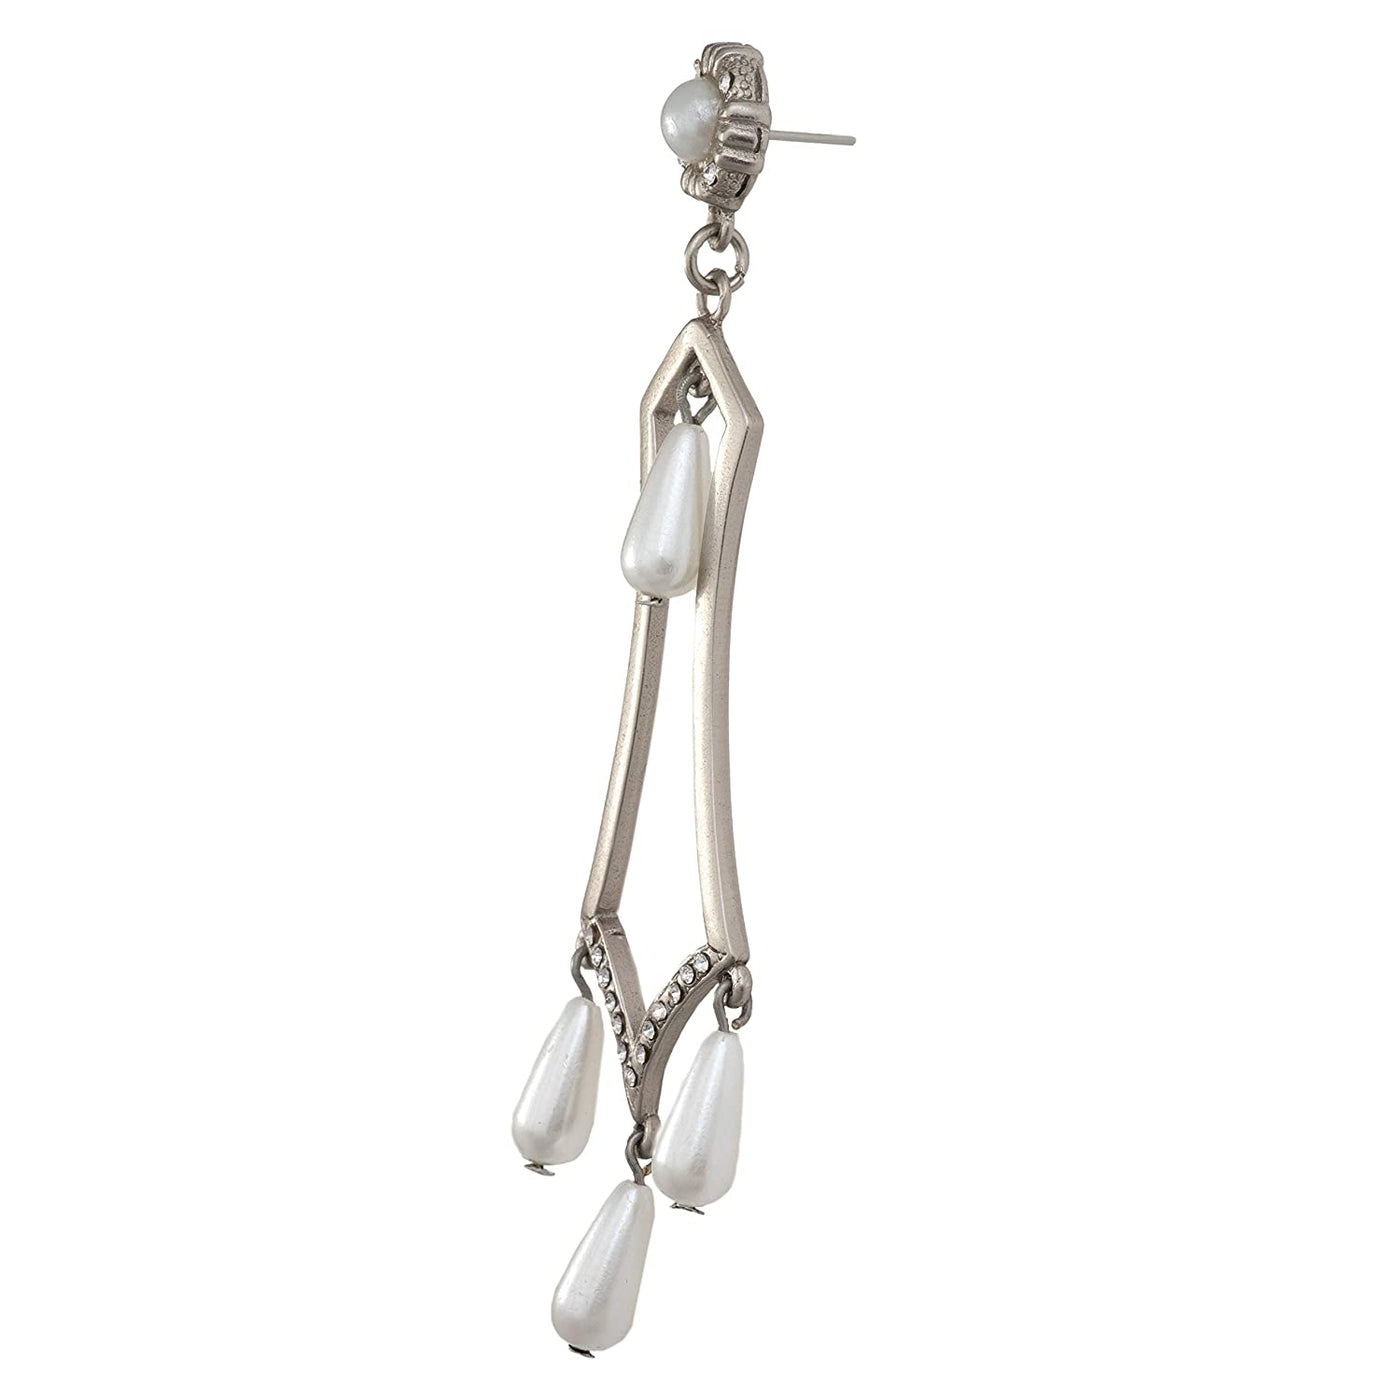 Estele silver Oxidised Pearl Drop Earrings for women